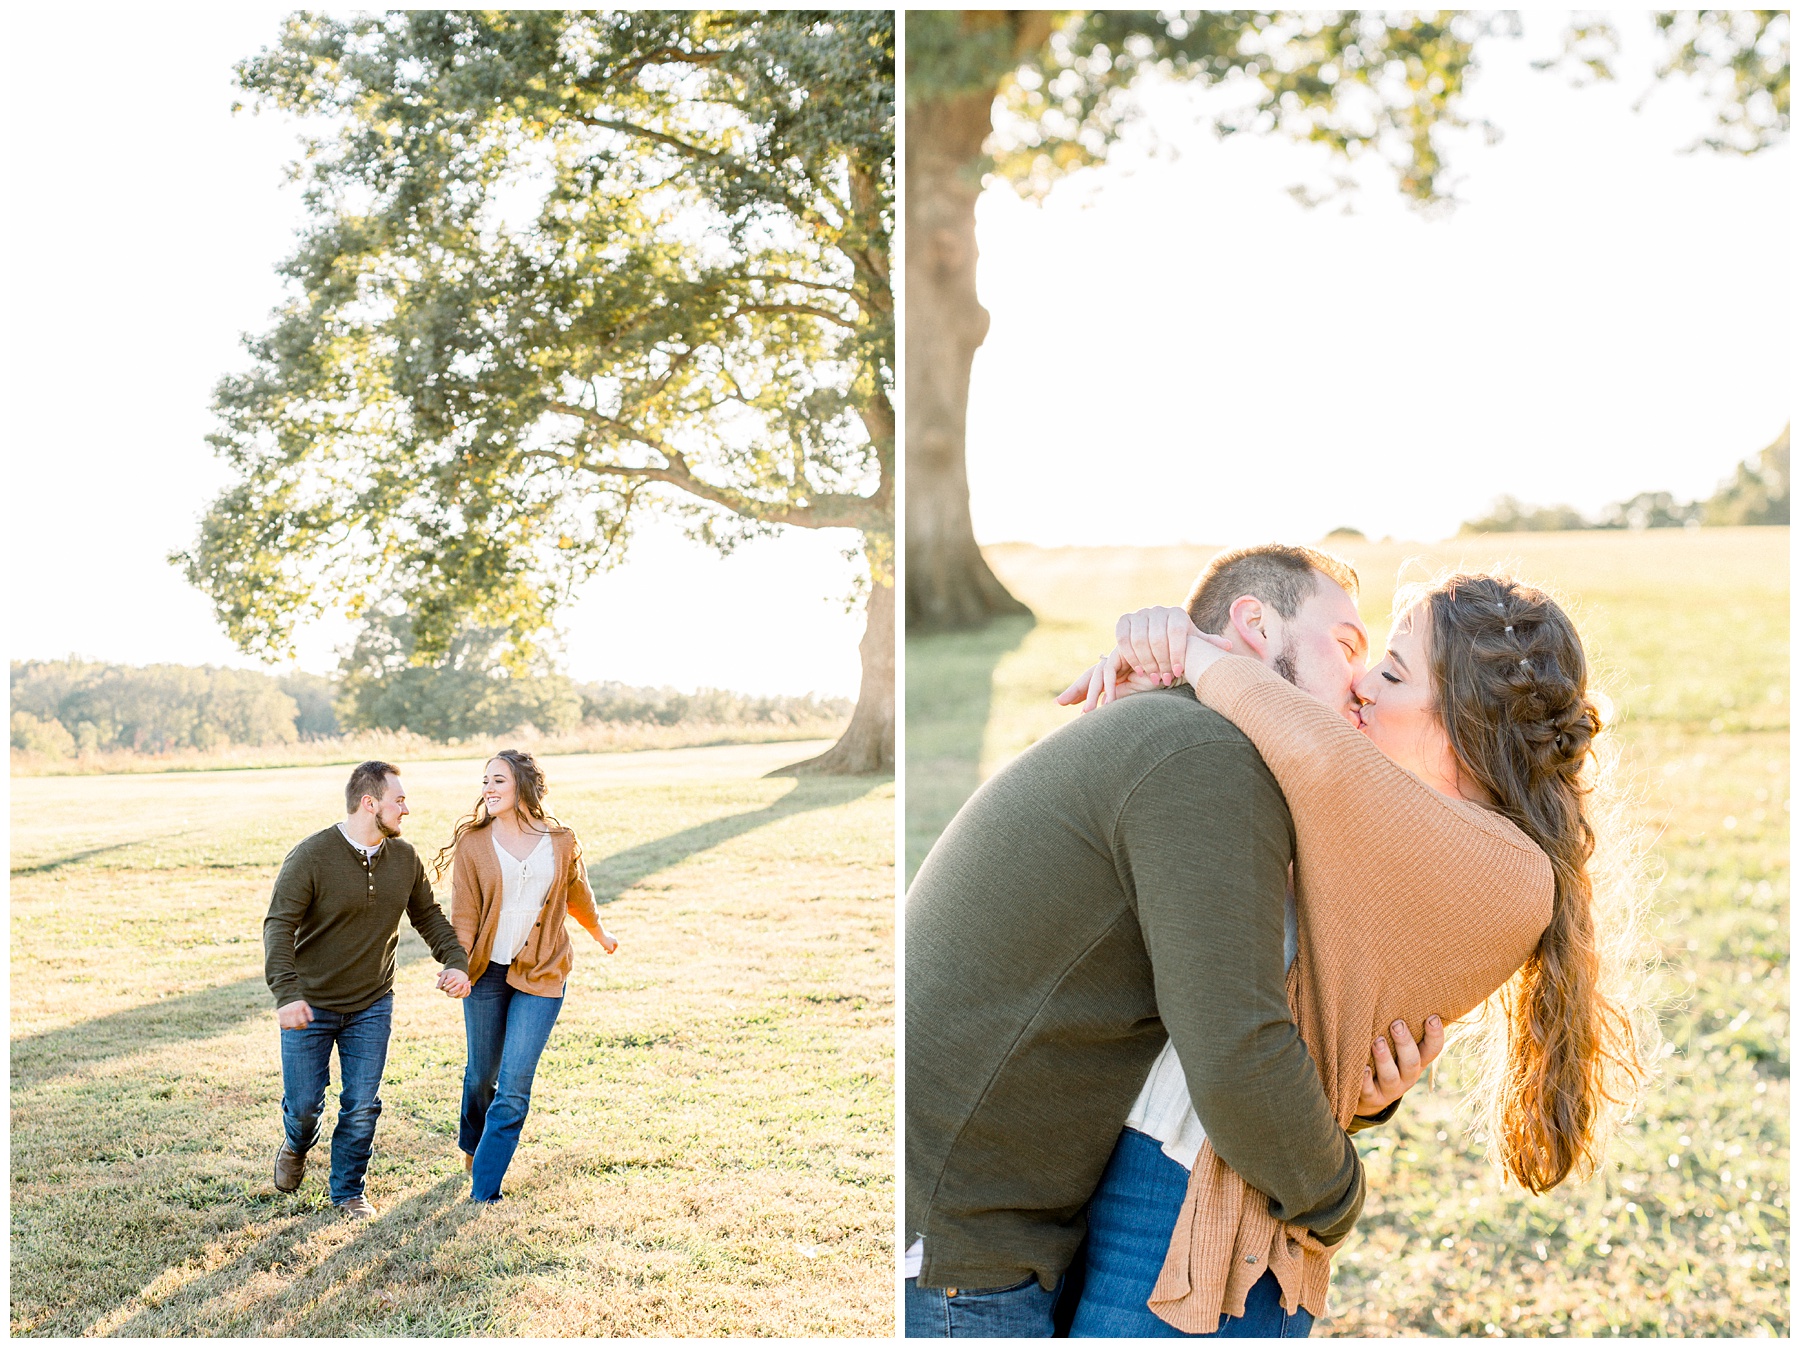 Summerfield Farm Engagement Session. North Carolina Wedding Photographer. Amanda Eloise Photography